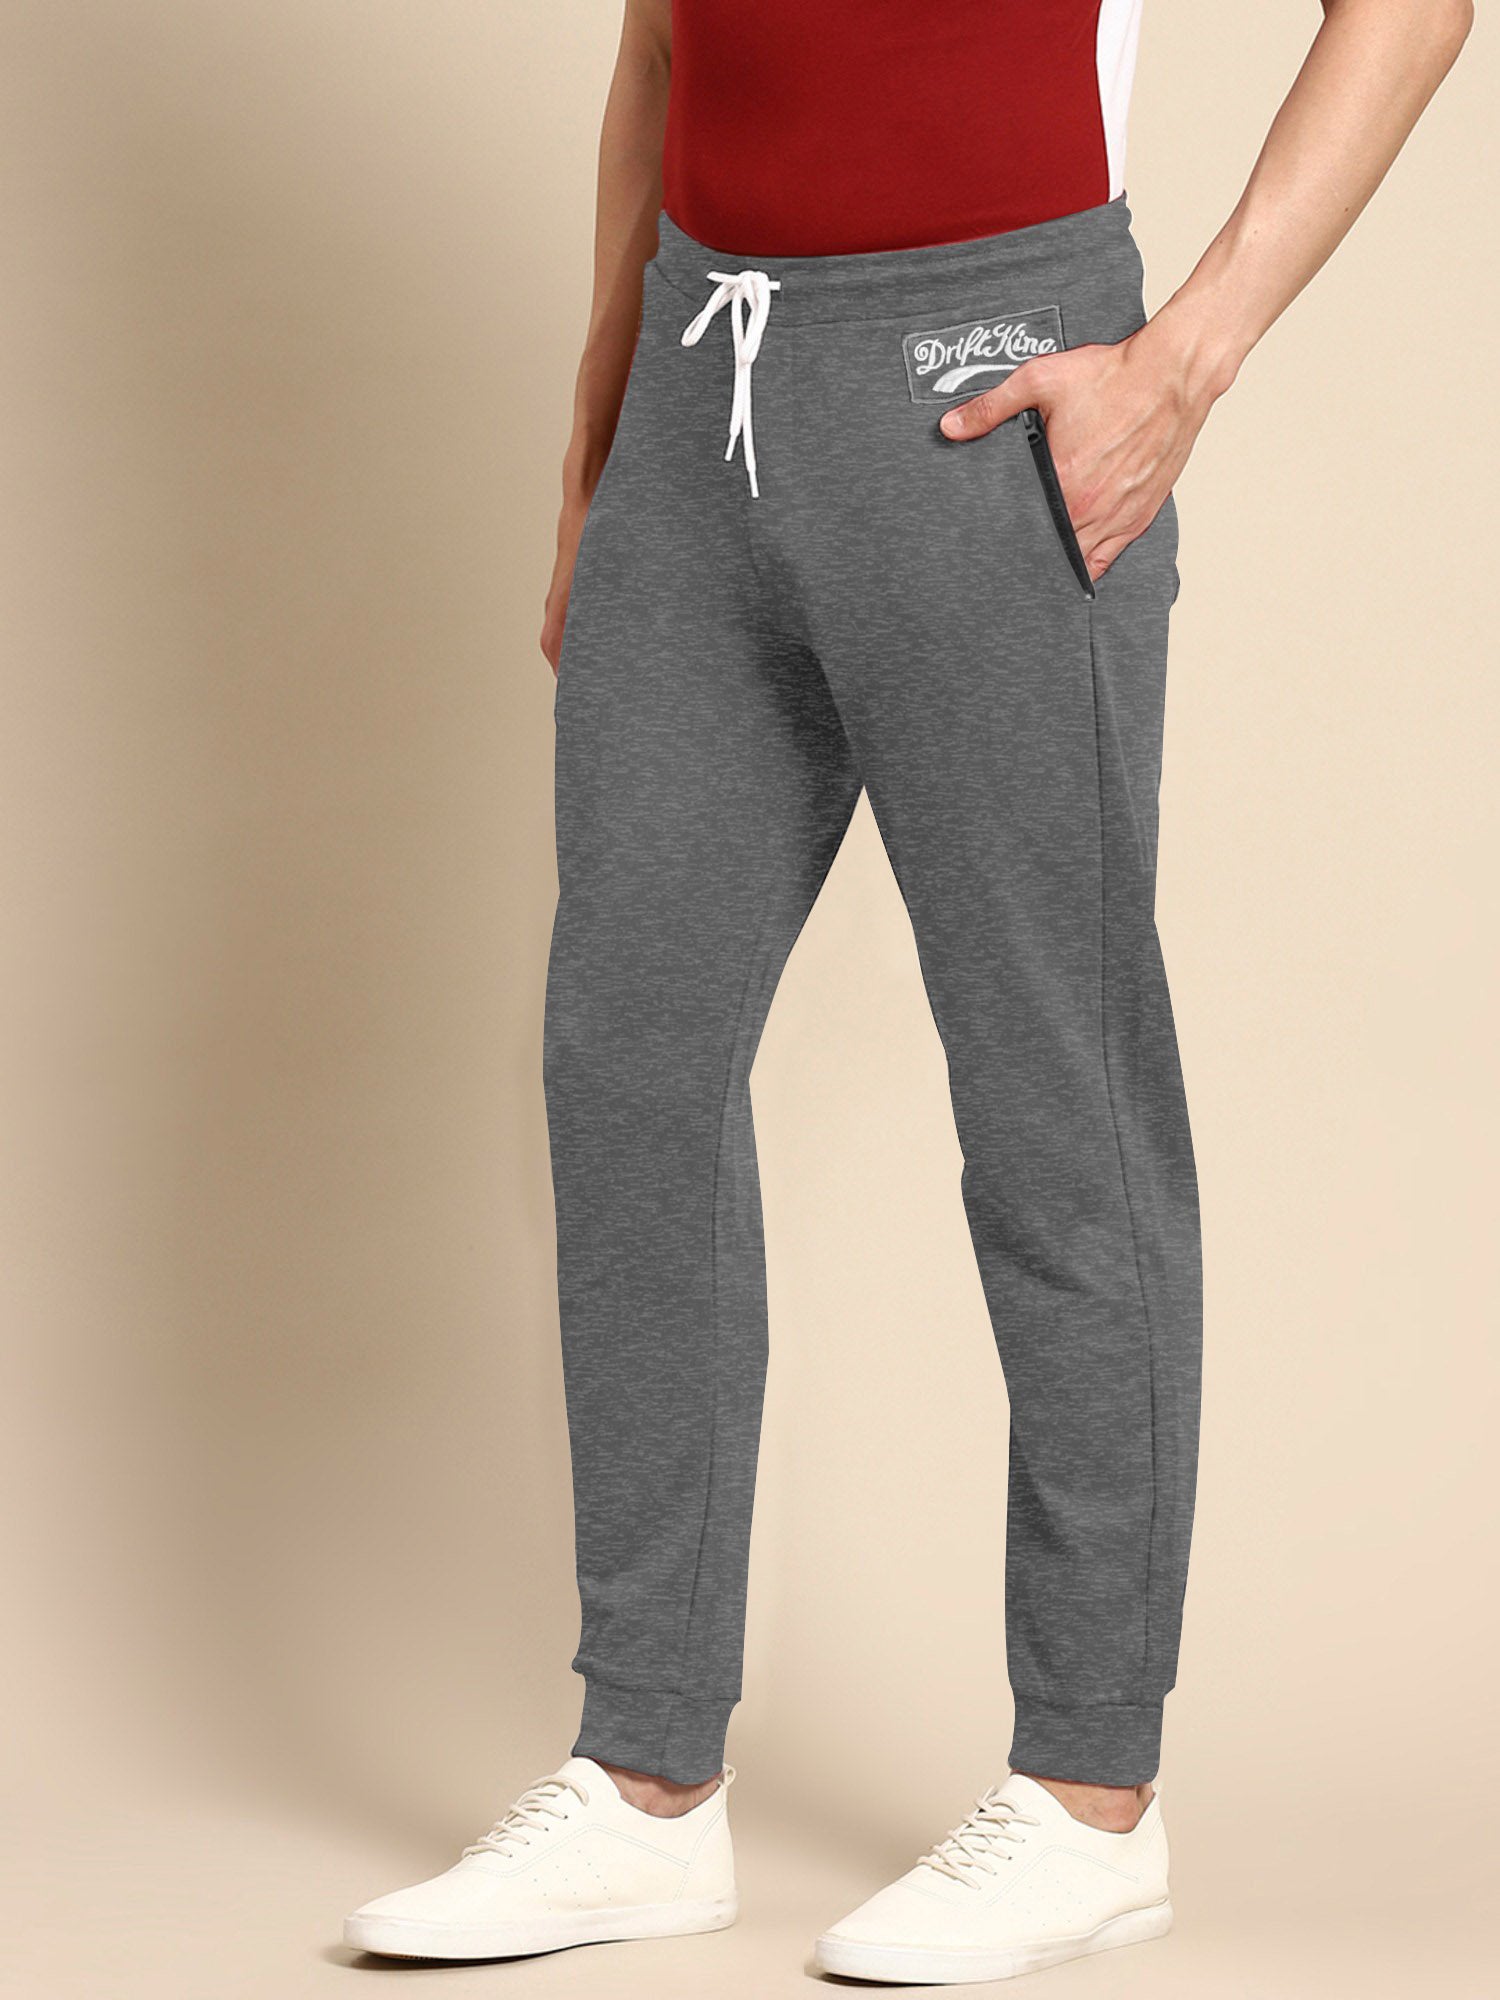 Drift King Slim Fit Fleece Jogger Trouser For Men-Charcoal Melange-SP852